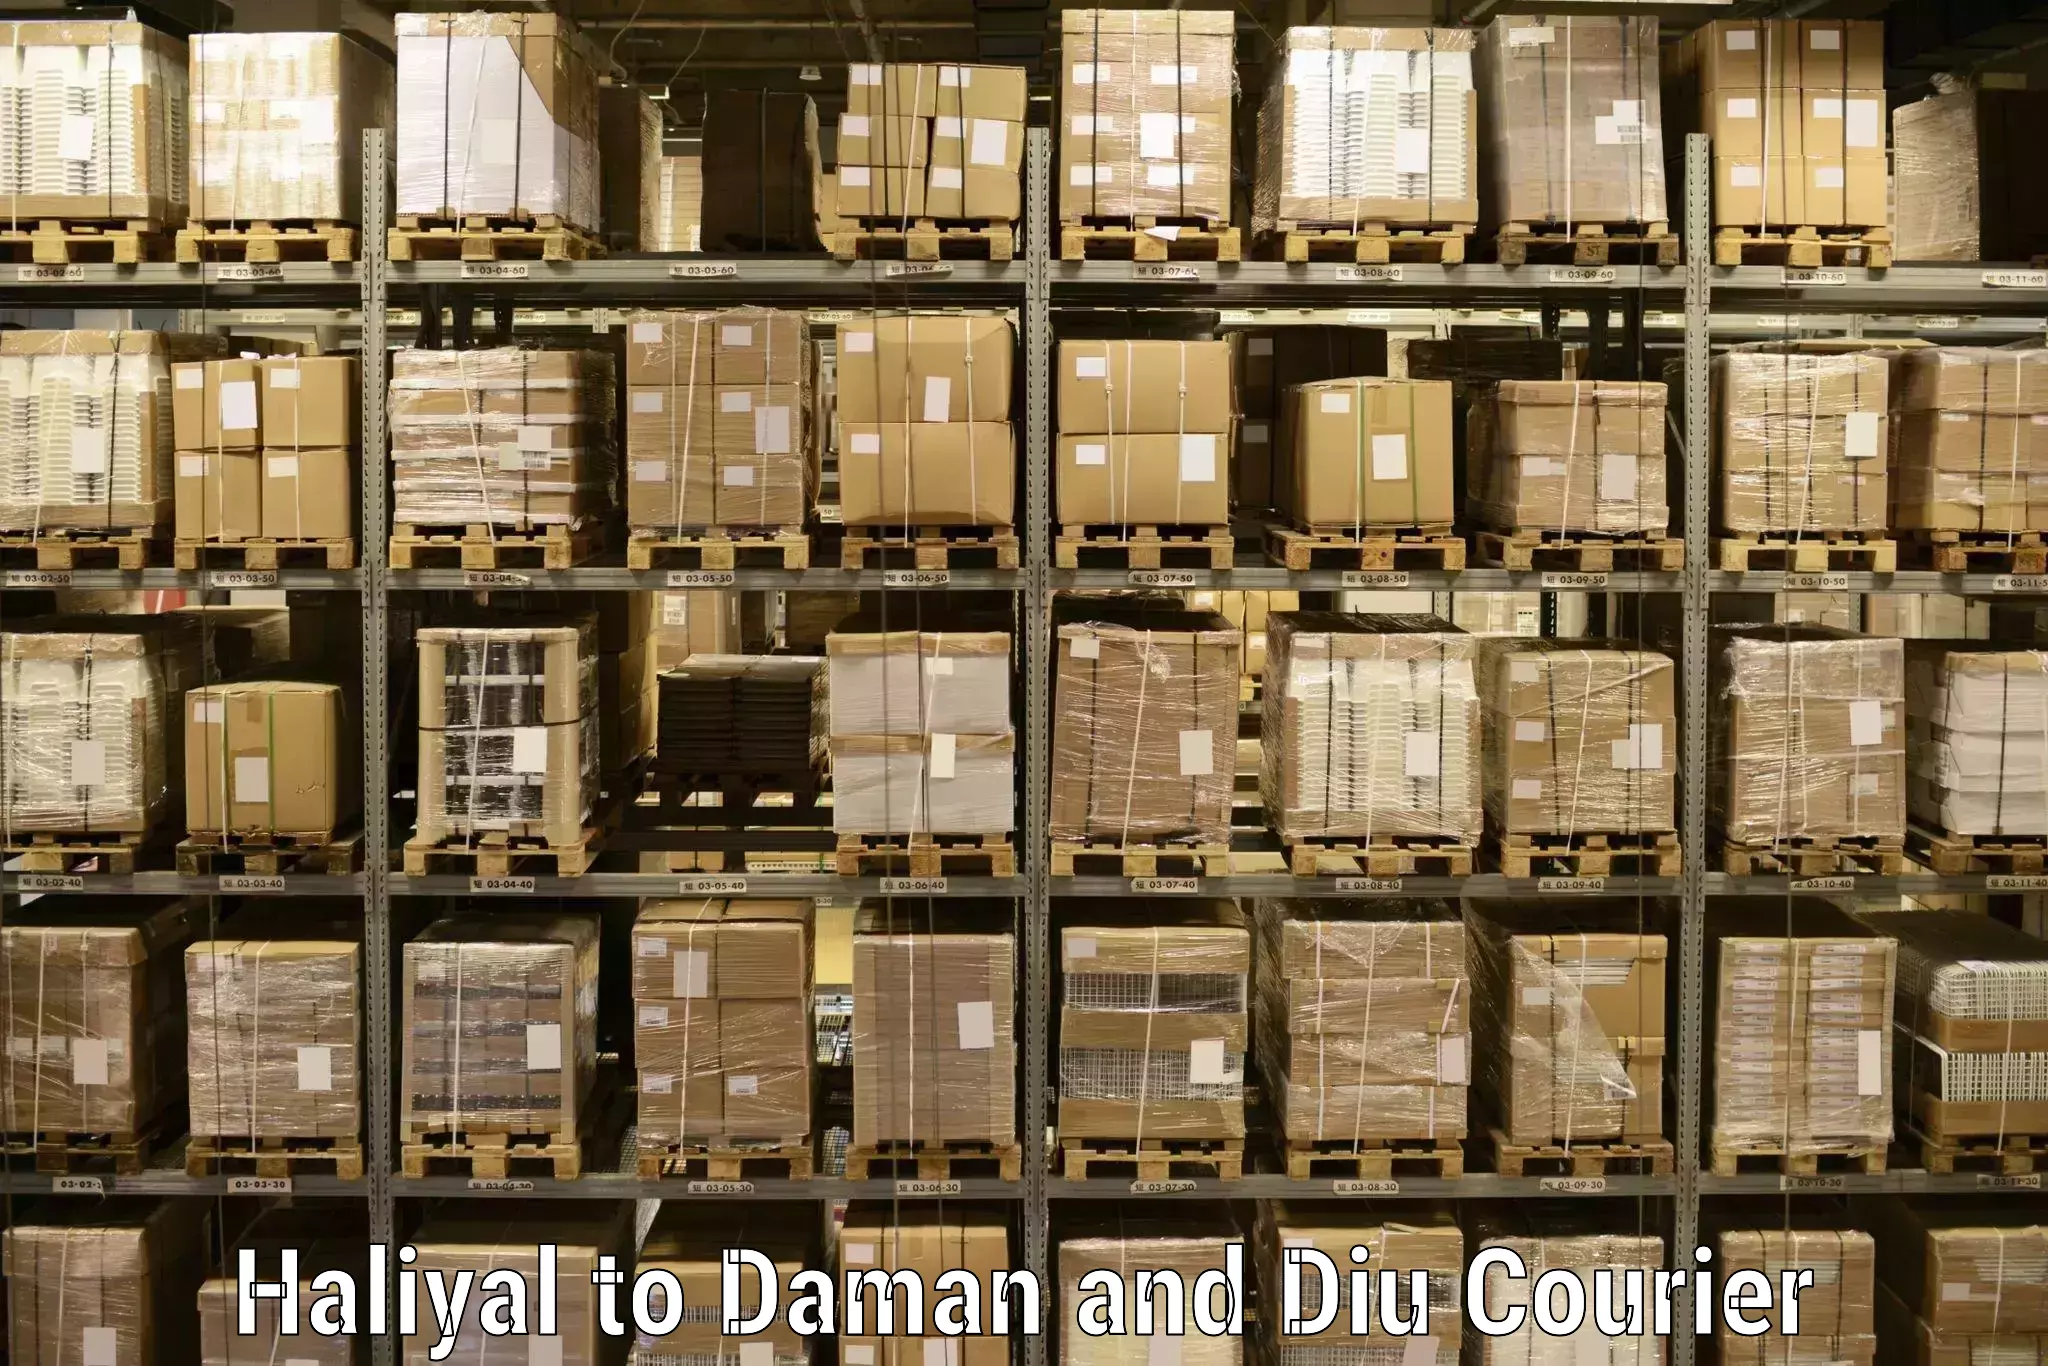 Global shipping networks Haliyal to Daman and Diu